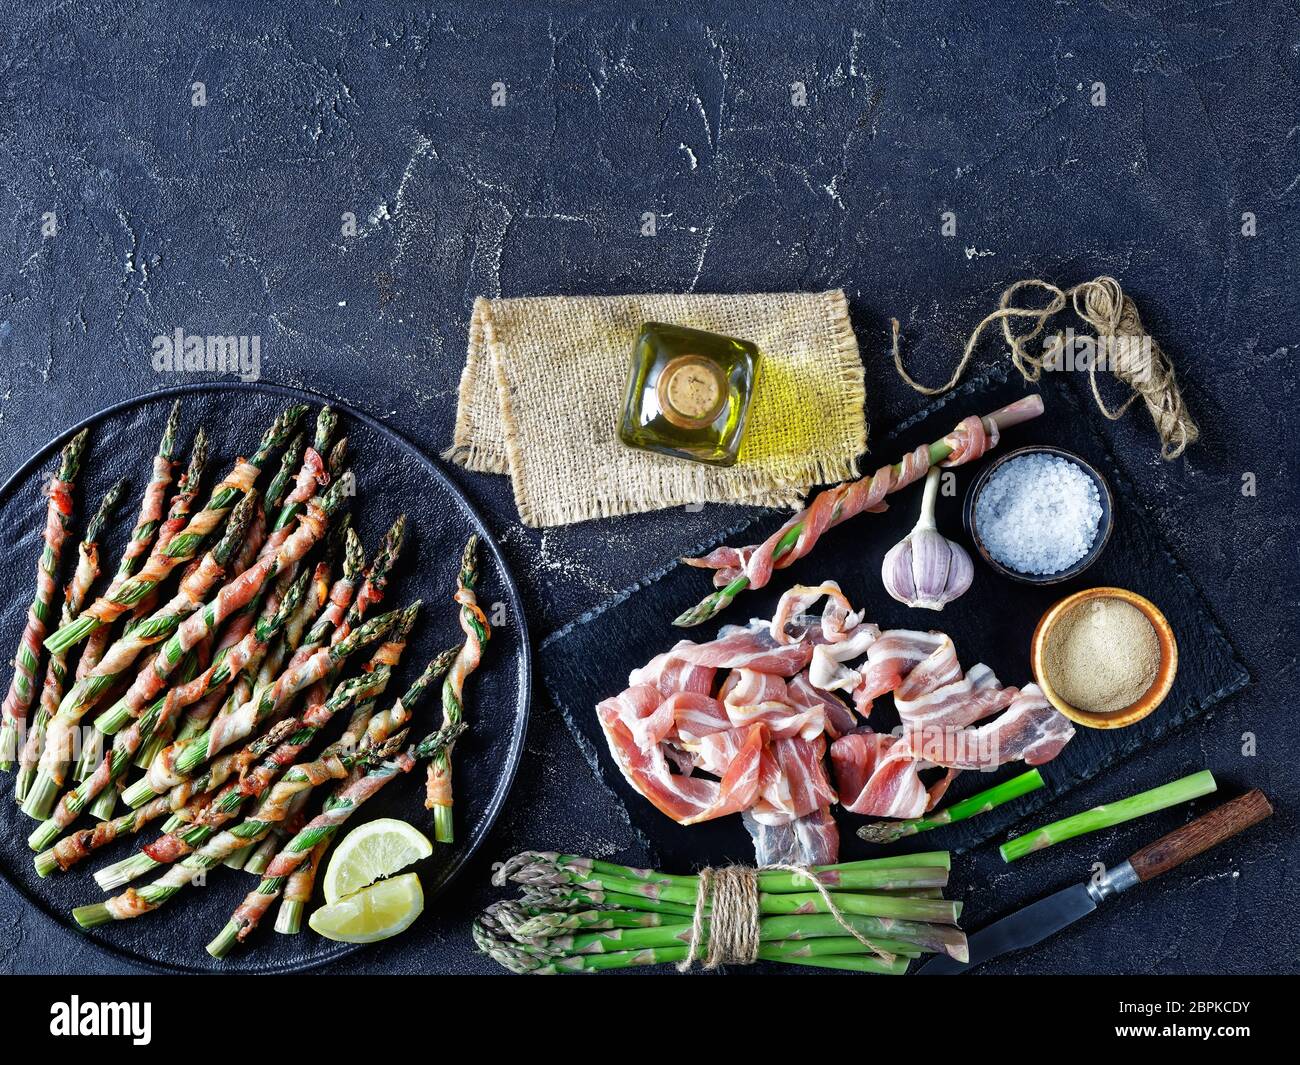 Asparagi avvolti con pancetta cotti al forno con aglio e sale marino serviti su un piatto nero con olio d'oliva su fondo di cemento scuro, vista dall'alto, Fla Foto Stock